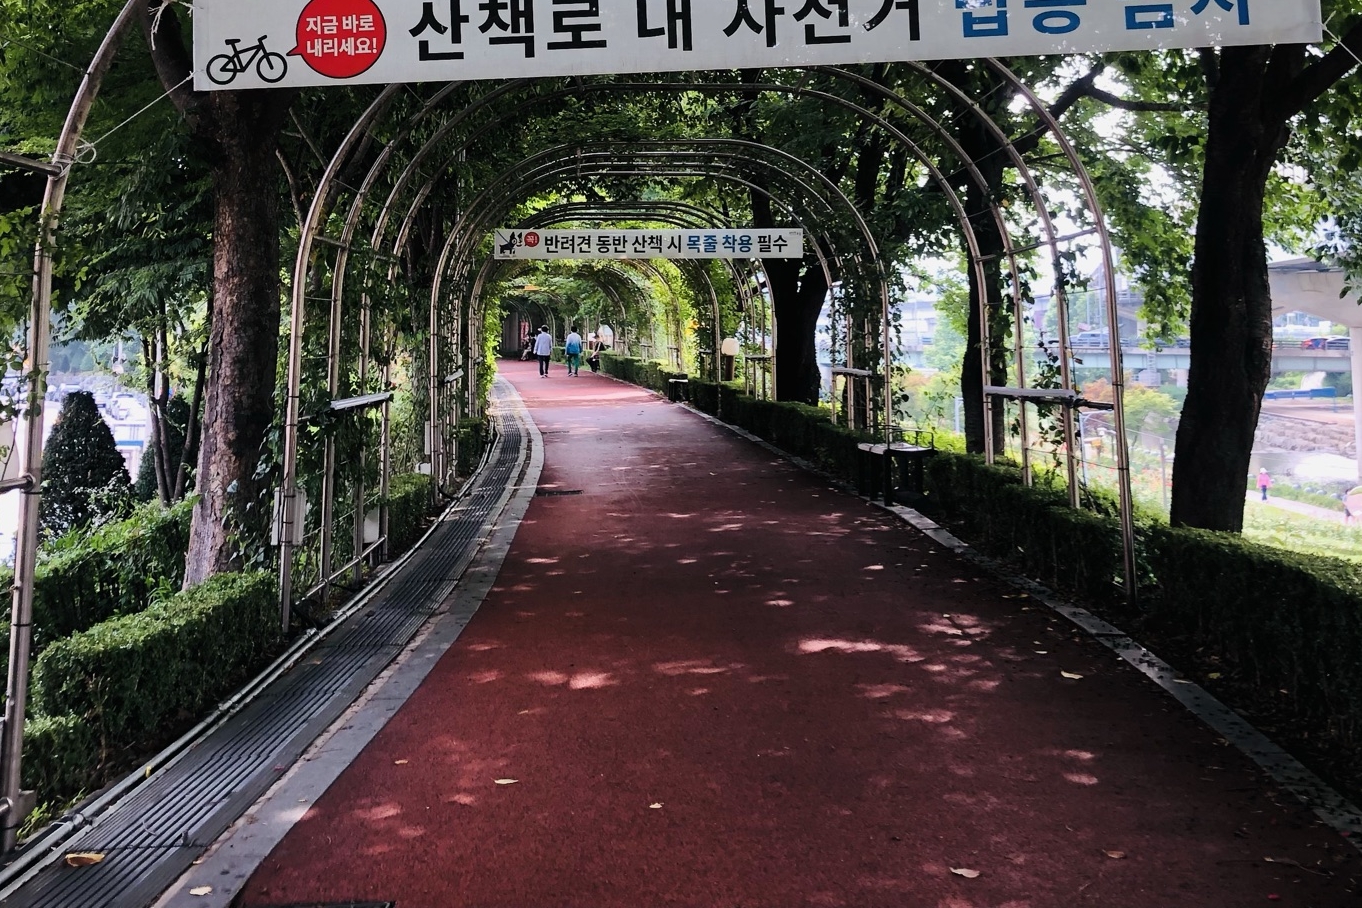 접근로/주출입구0 : 서울장미공원(중랑장미공원) 접근로 전경3
